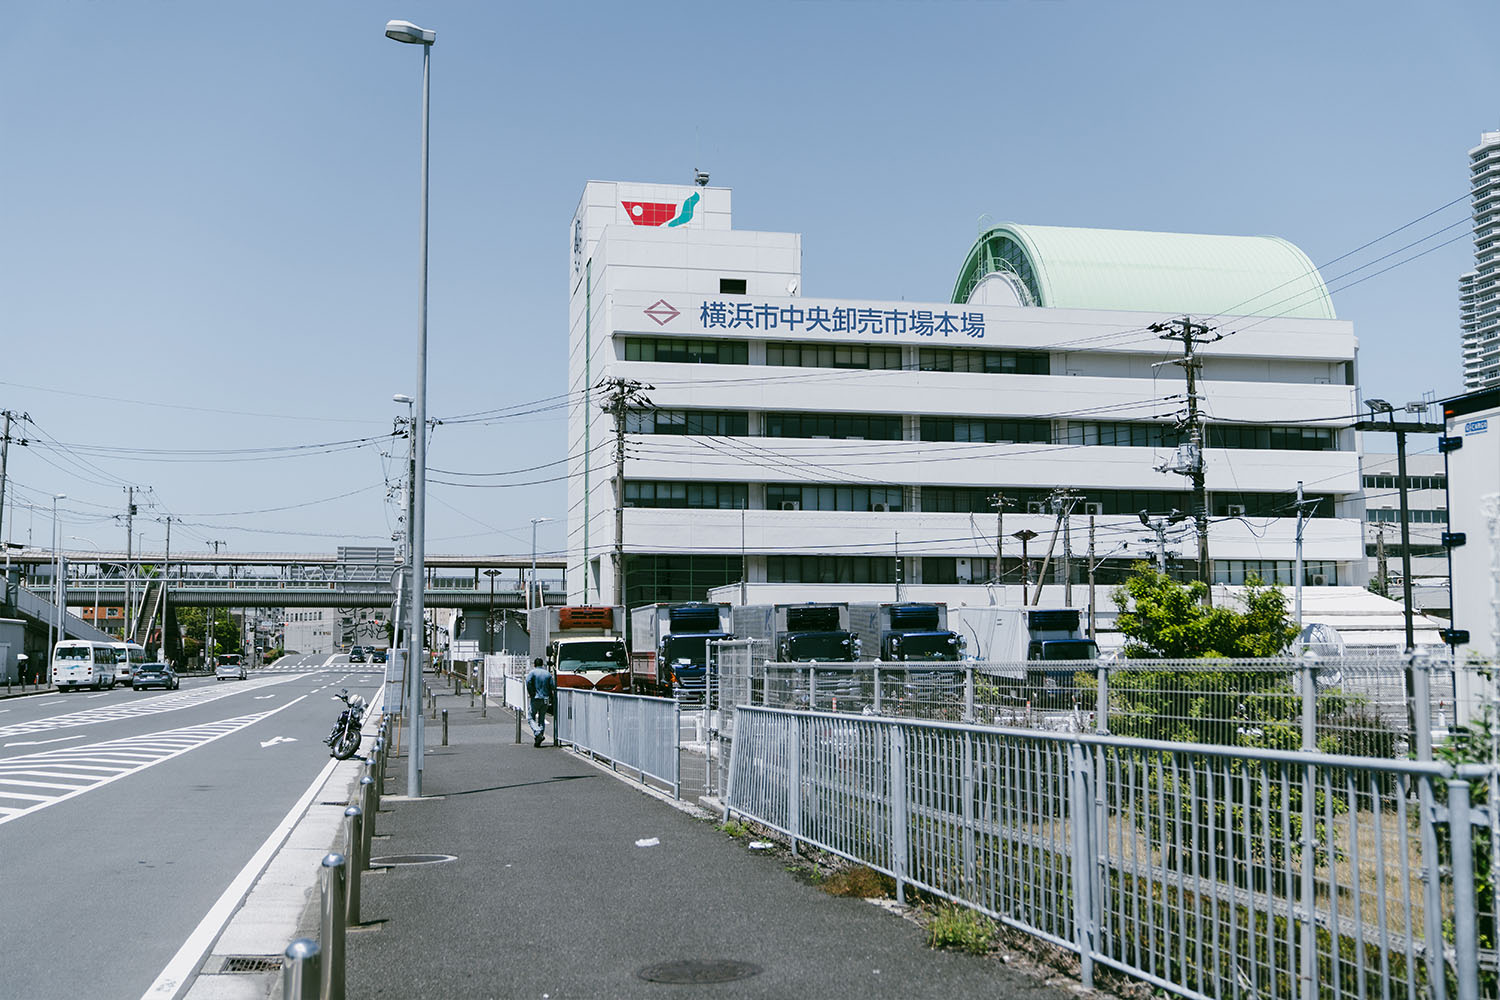 洲崎大神で出会った地元の方におすすめしてもらった横浜市卸売市場に到着。こちらの建物は青果部で、道路の反対側には水産物部があり敷地はとても広い！